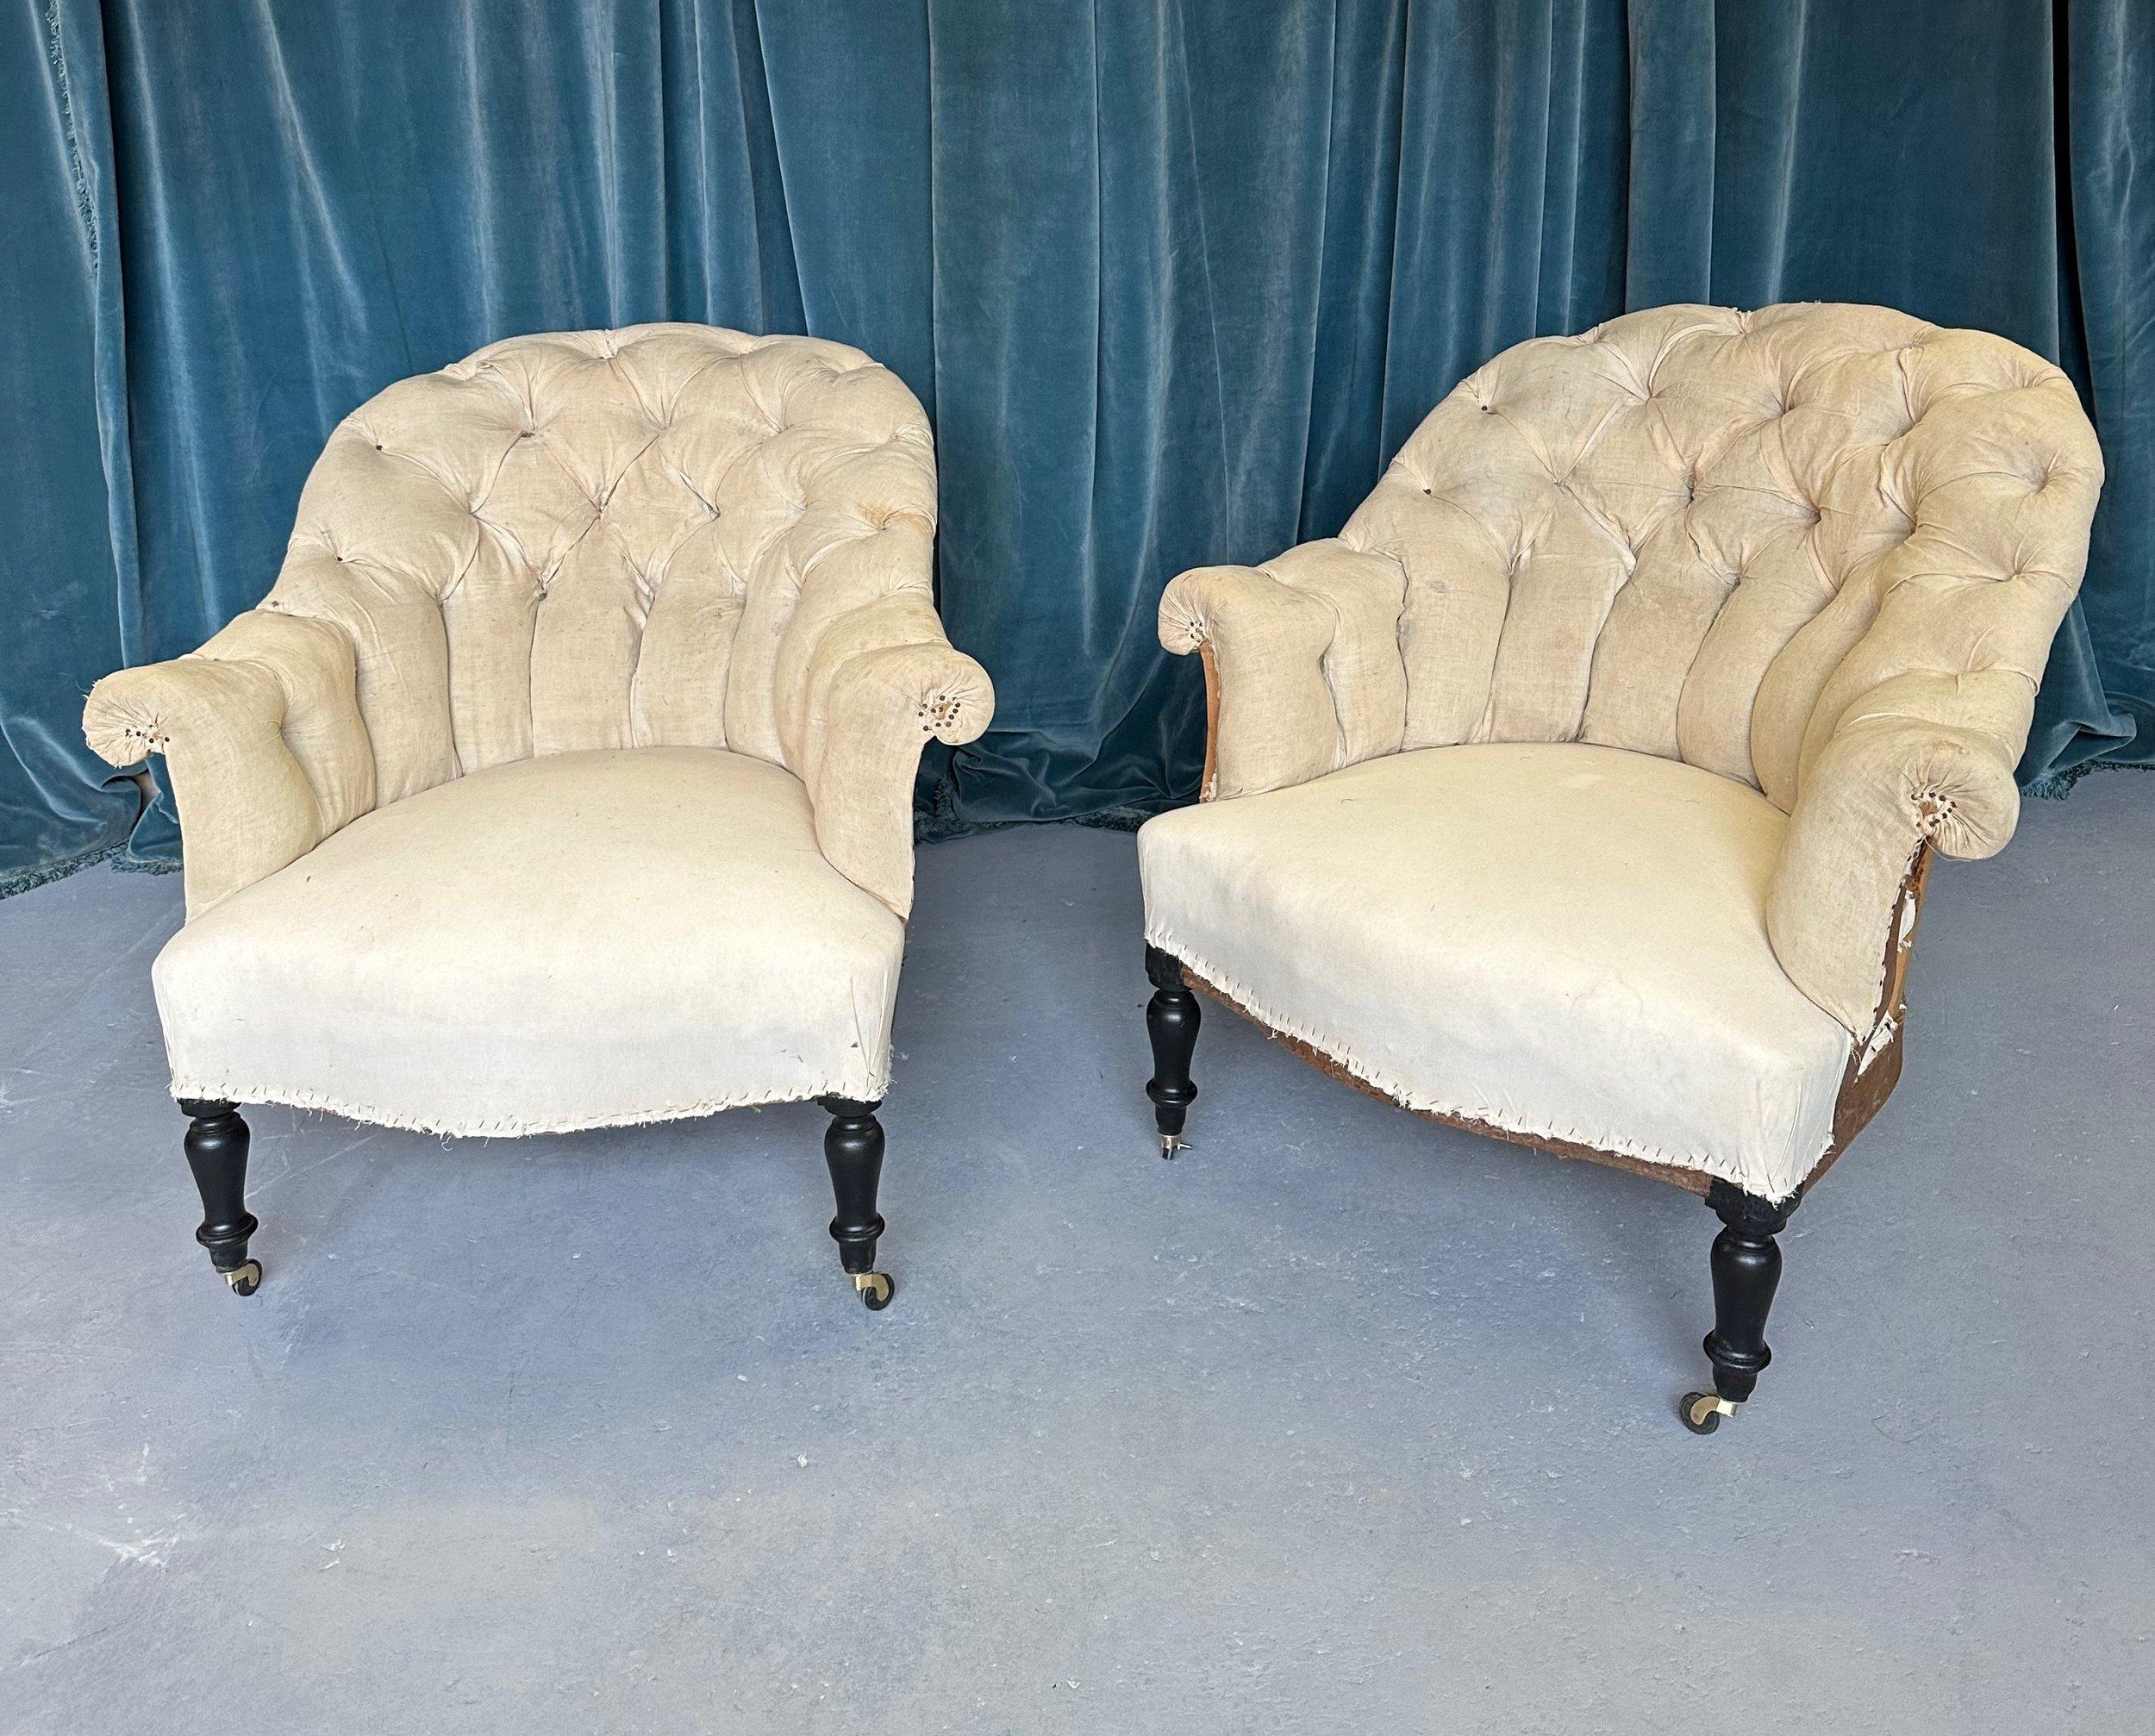 Une belle paire de fauteuils français du 19ème siècle avec des dossiers tuftés en diamant et des accoudoirs à volutes. Cette paire de fauteuils de la période Napoléon III présente les détails complexes et la beauté romantique typiques de cette